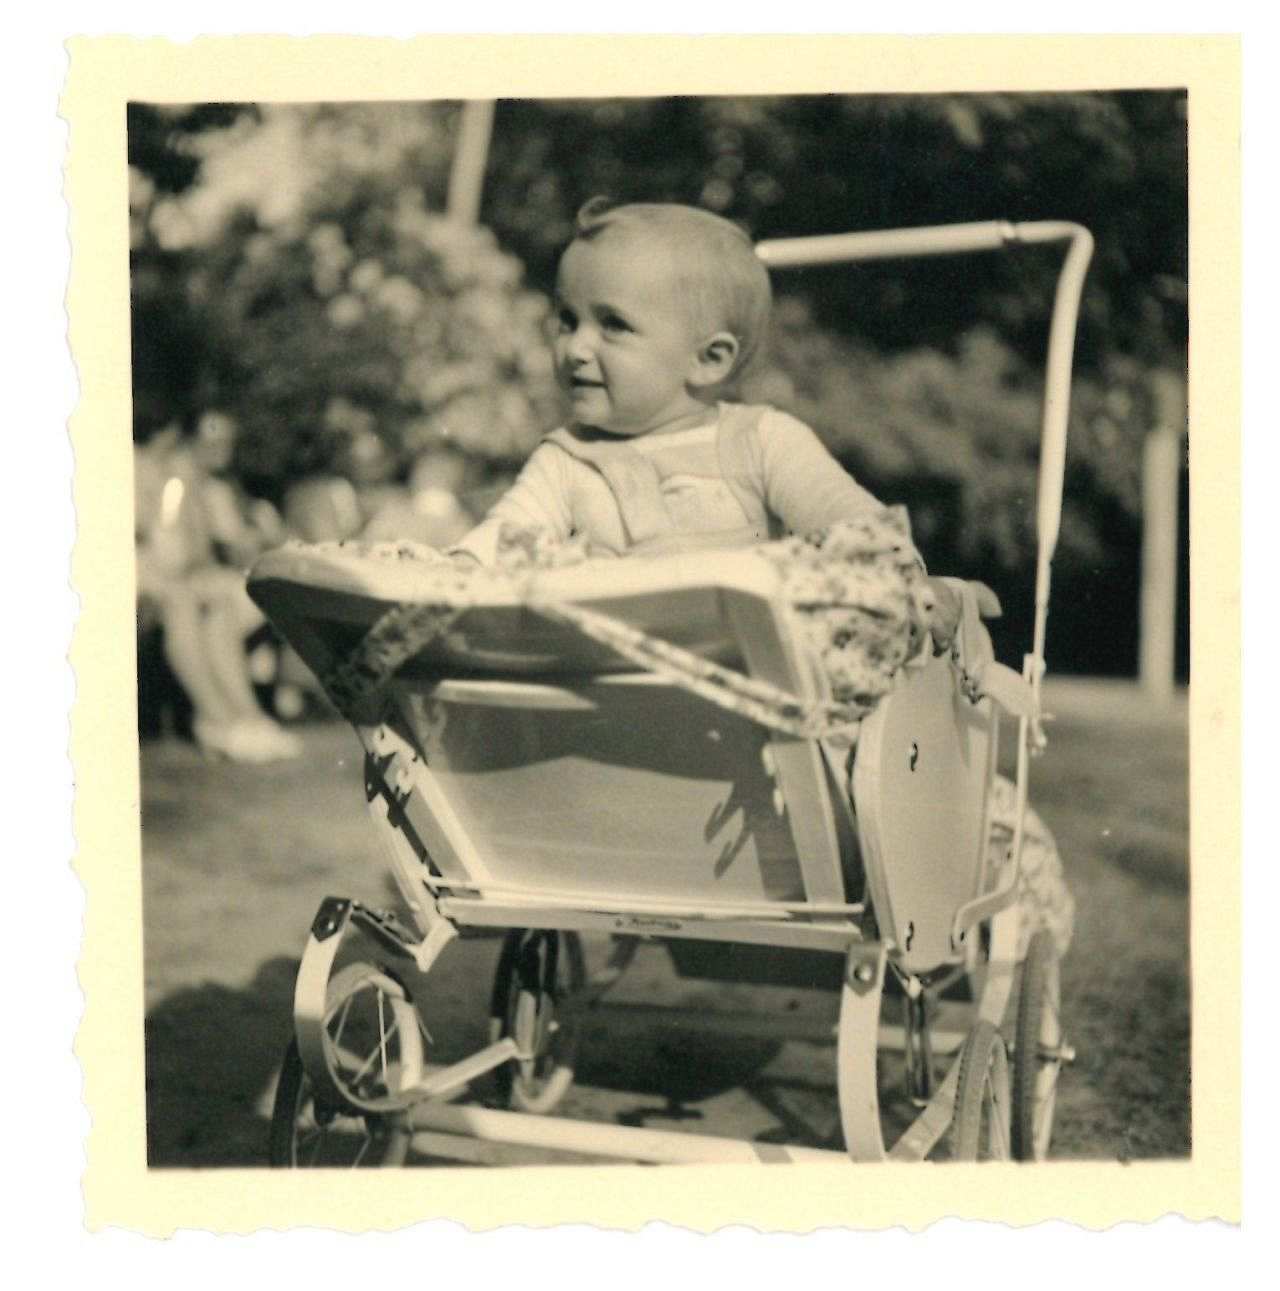 Quadratische schwarz-weiß Fotografie, ein einjähriges Baby sitzt aufrecht in einem offenen Kinderwagen und schaut aufmerksam hoch.